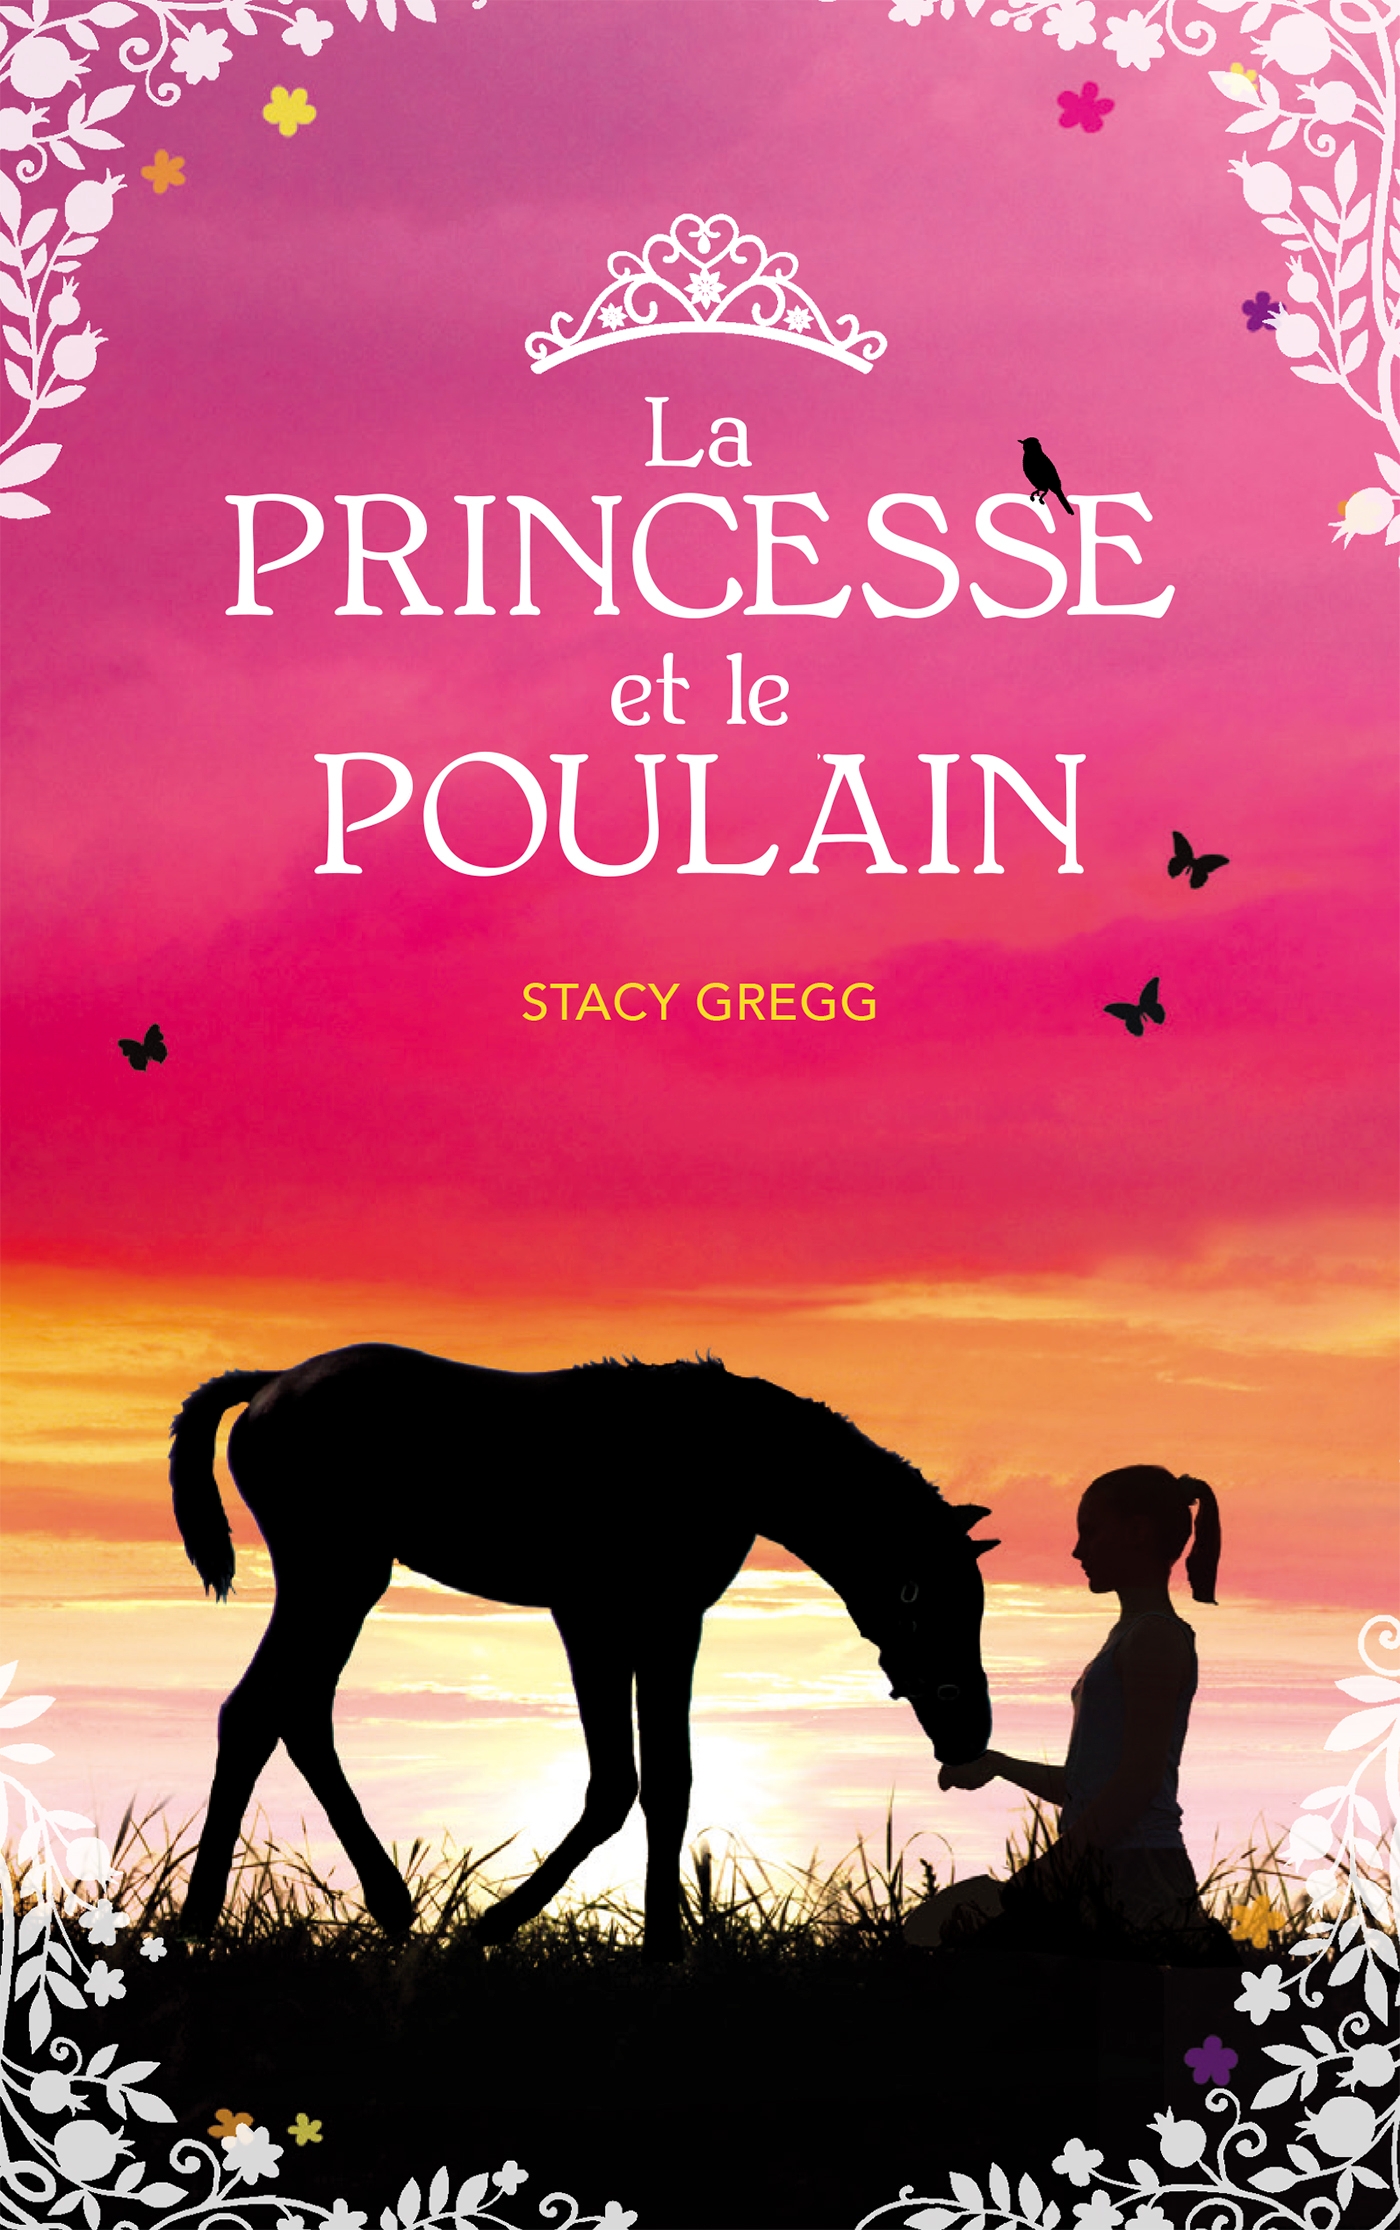 https://www.juliemag.com/wp-content/uploads/La-princesse-et-le-poulain.jpg